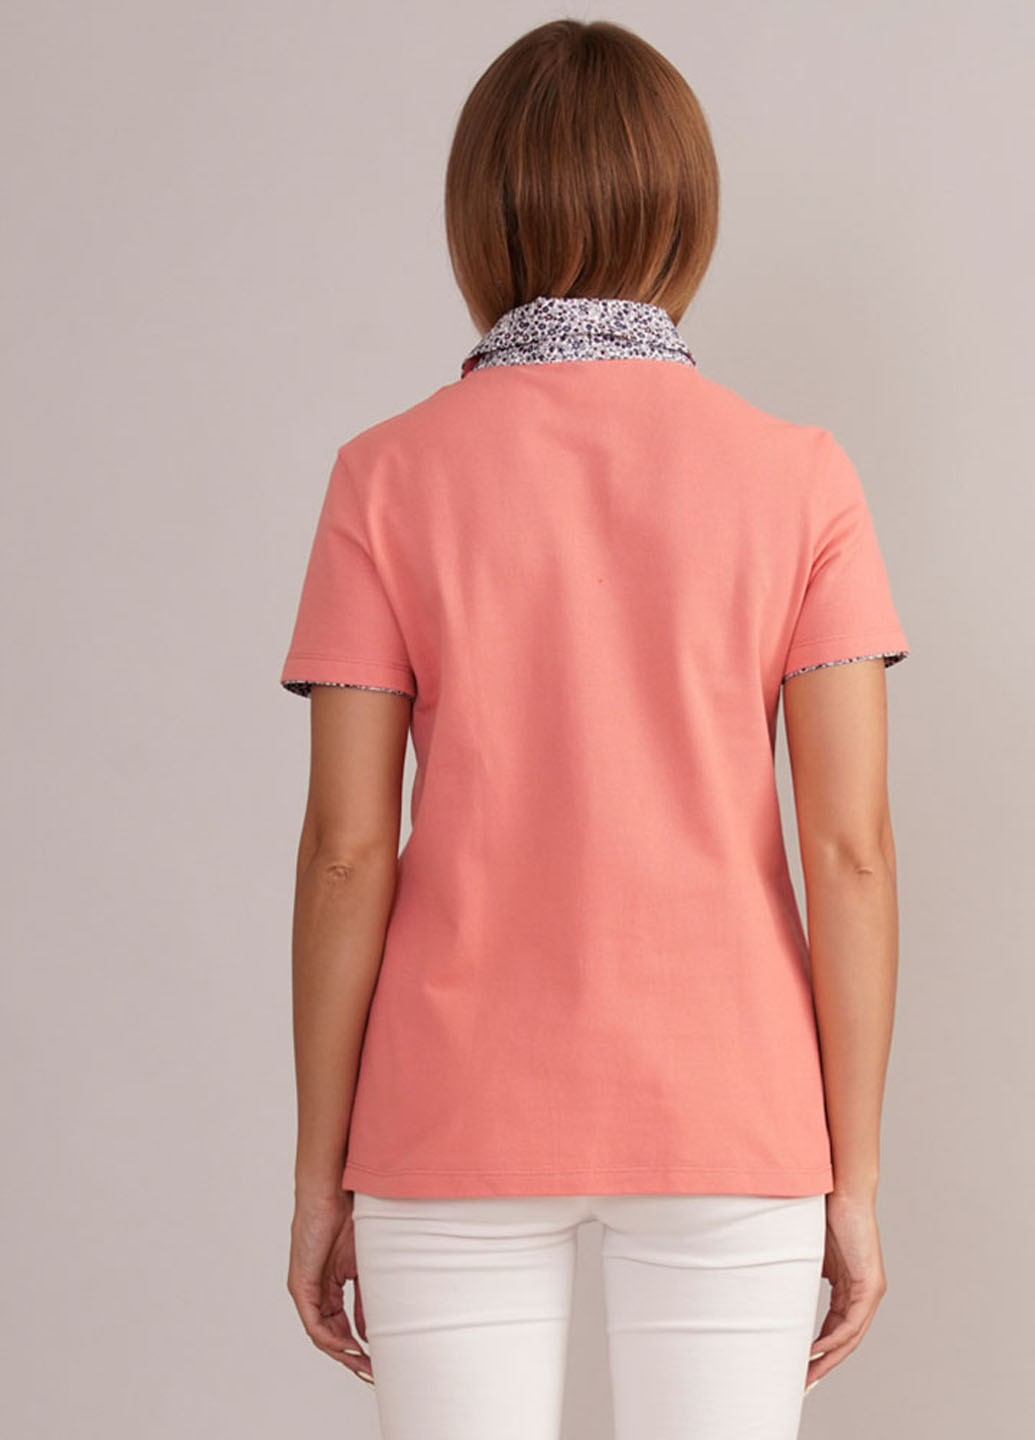 Персиковая женская футболка-поло Promin. однотонная